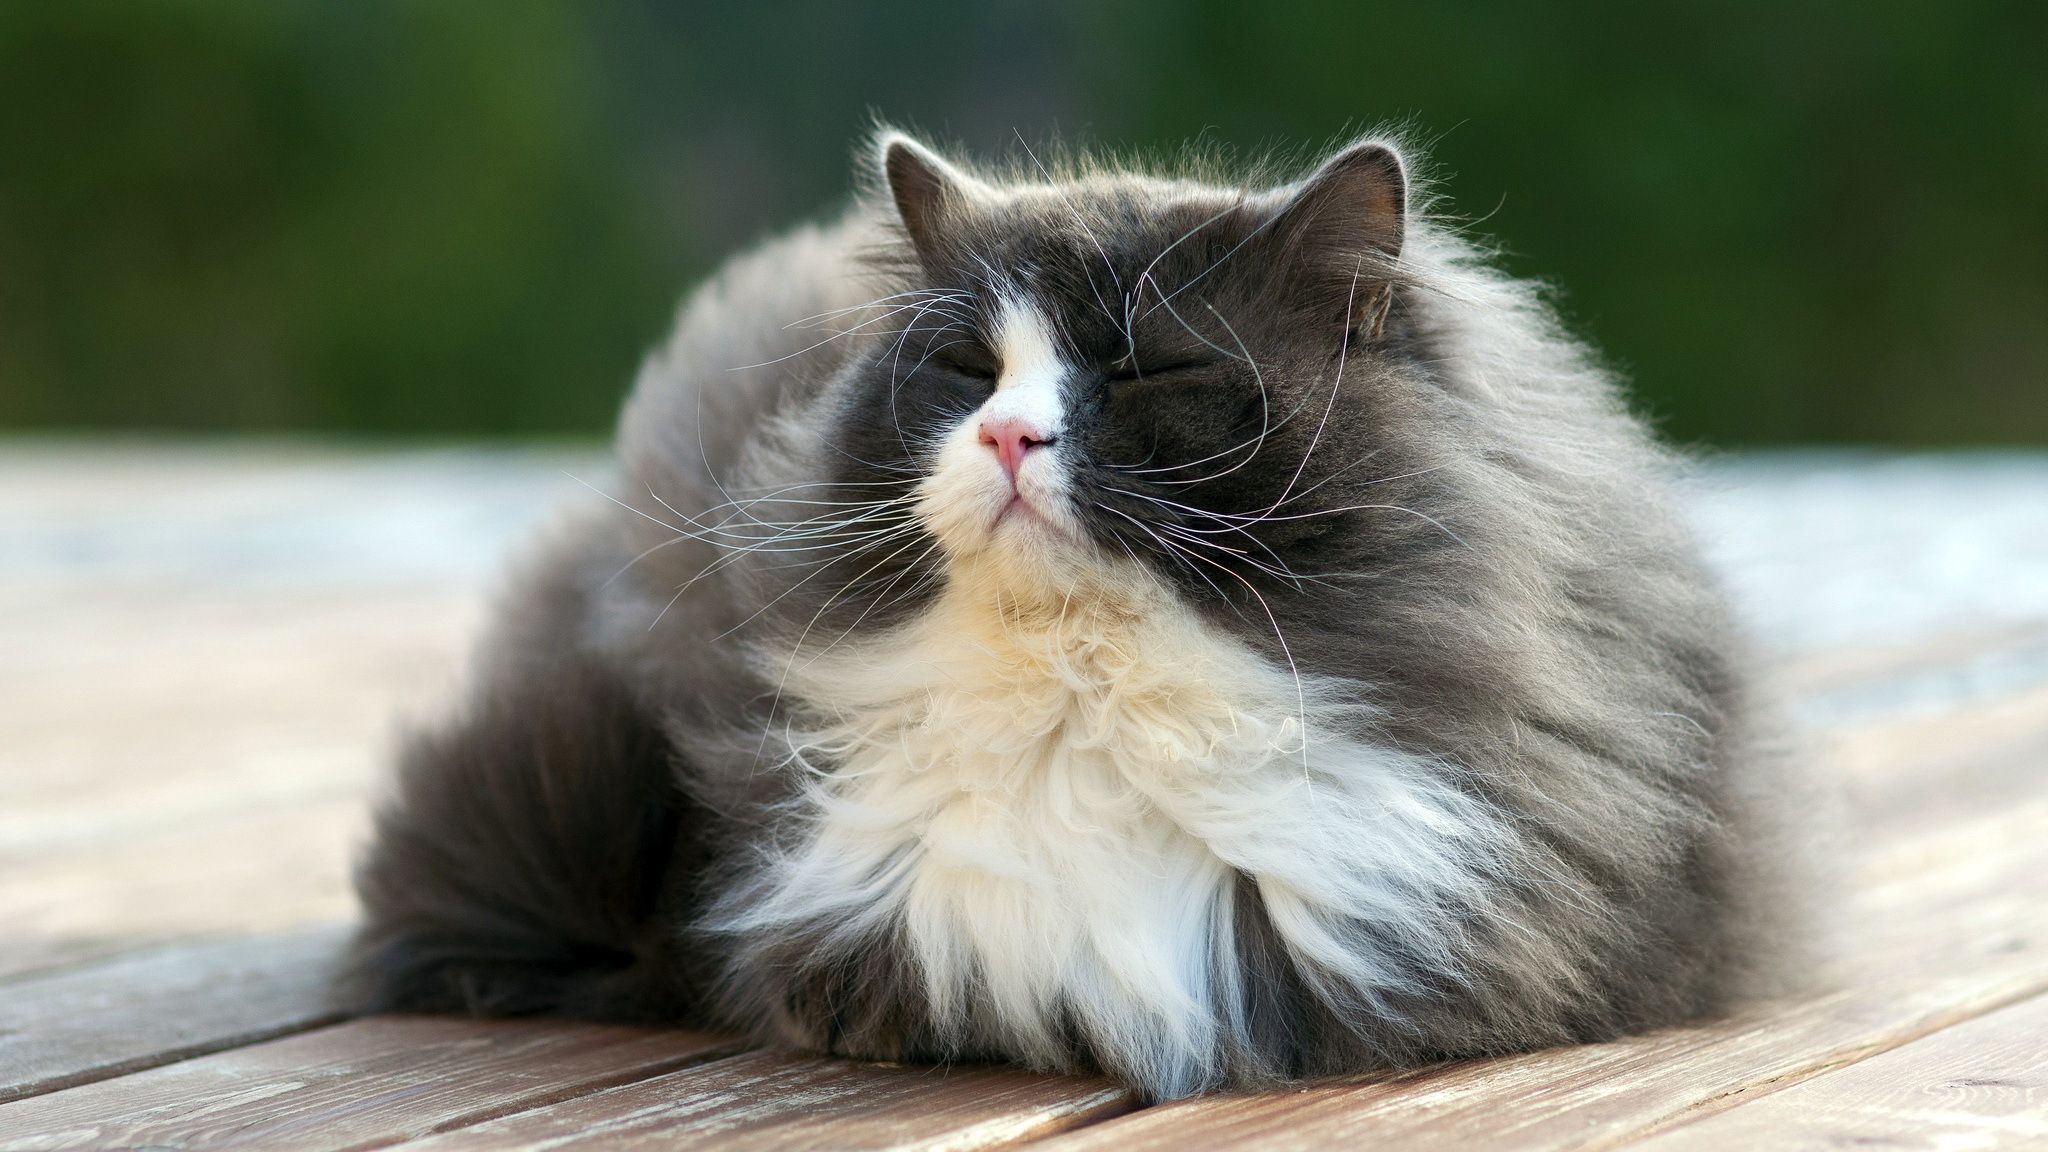 Big Fluffy Cat. Fluffy cat, Cats, Cat .com